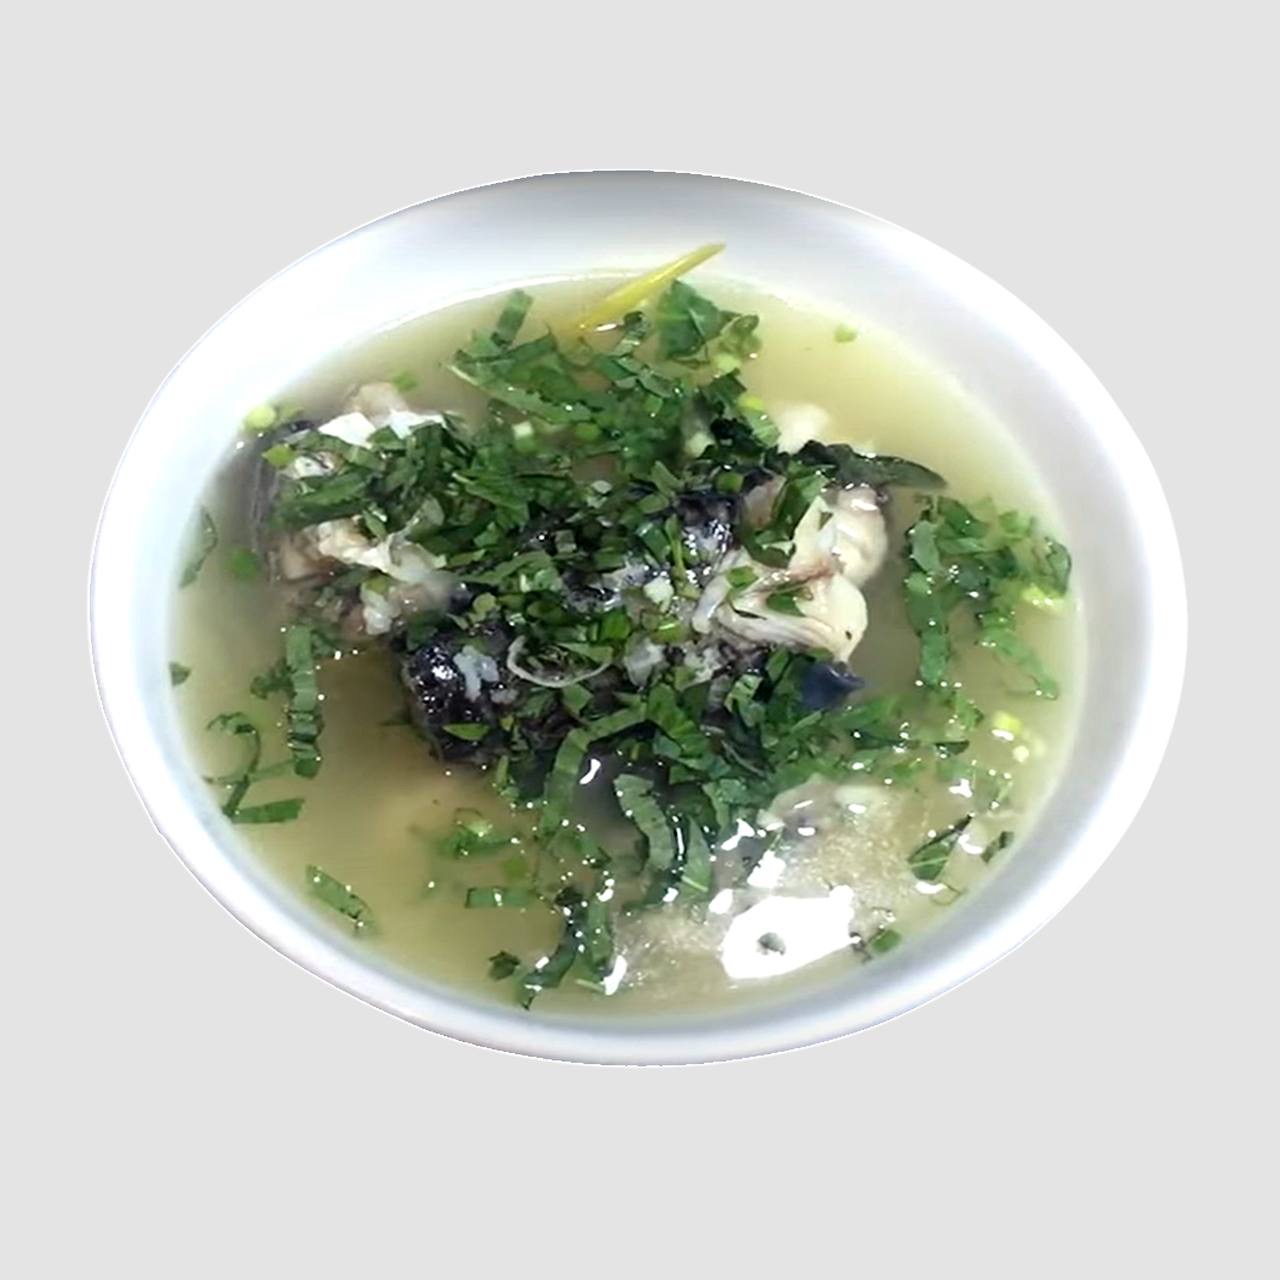 15.Fish (Rors) soup